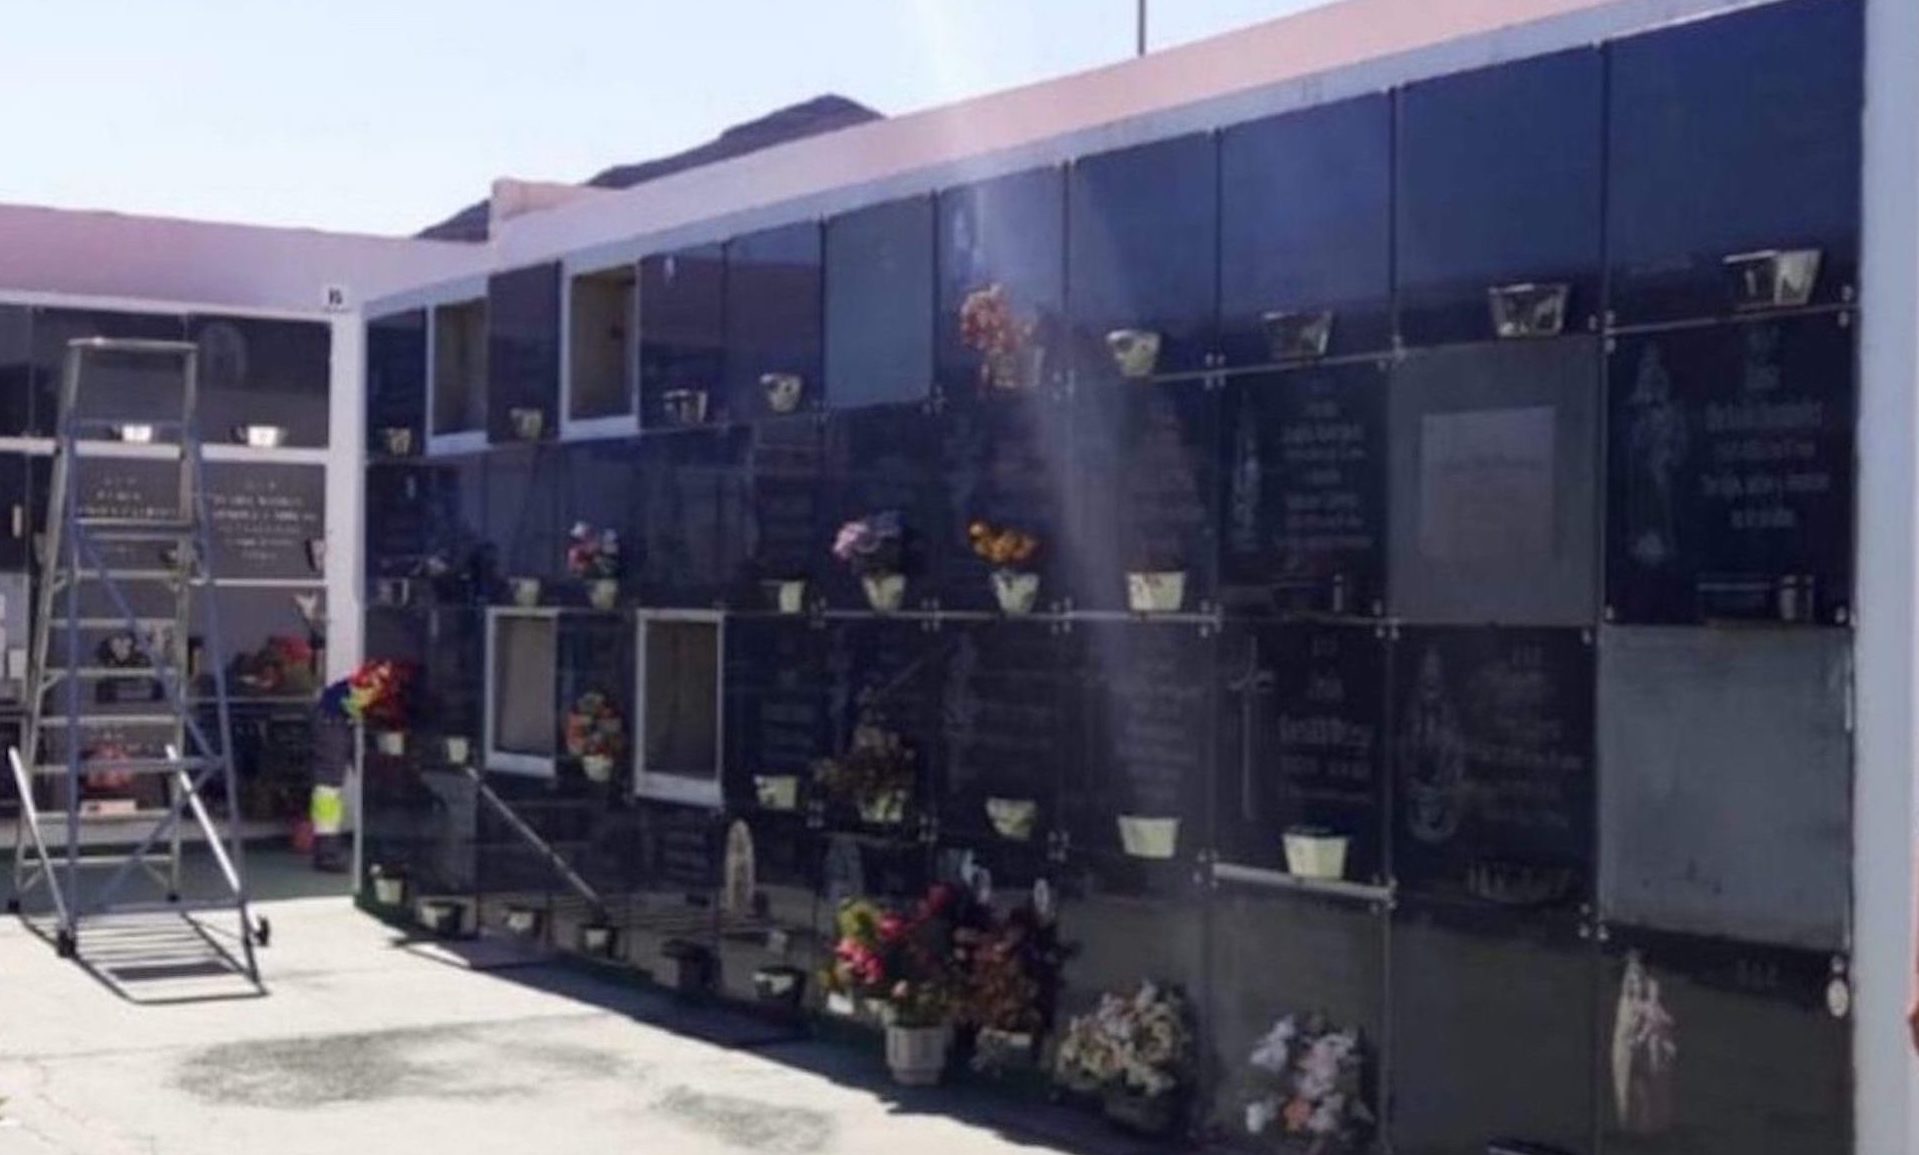 Tuineje adjudica las obras de rehabilitación y mejora del cementerio municipal